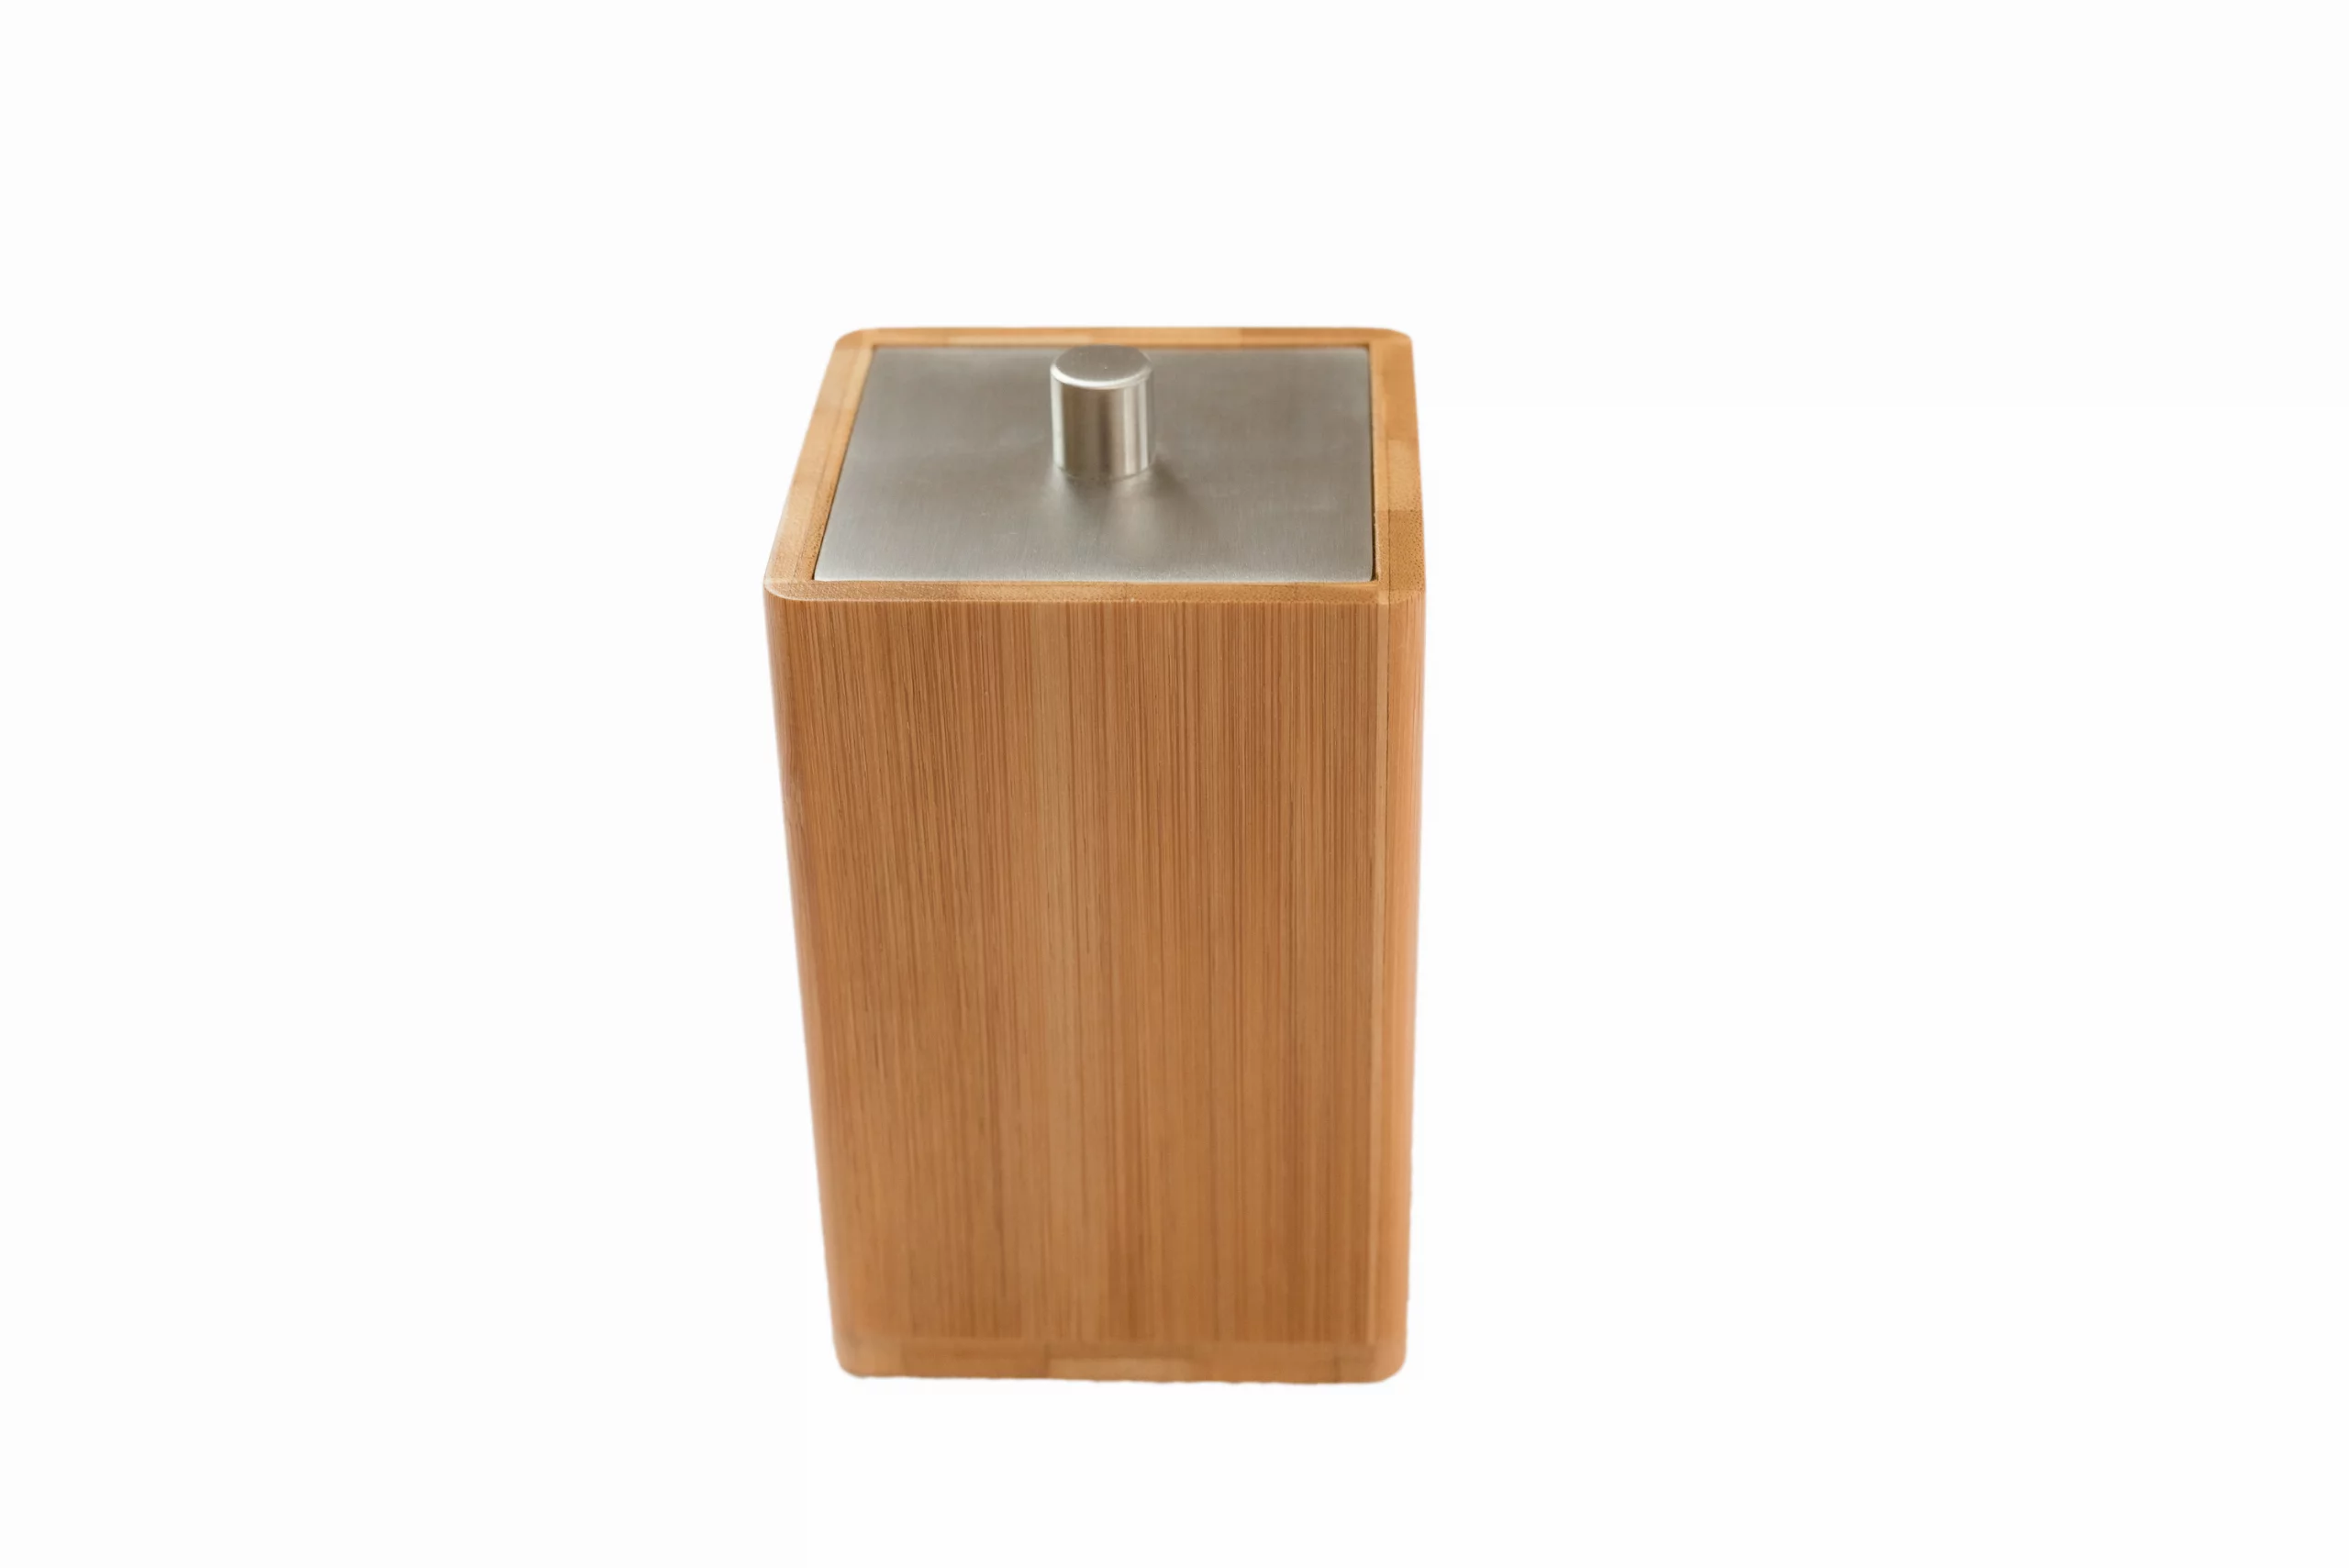 bamboe-wattenschijfjeshouder,-wattenschijfjescontainer-(lxbxh)-7.6-x-7.6-x-11-cm-bruin